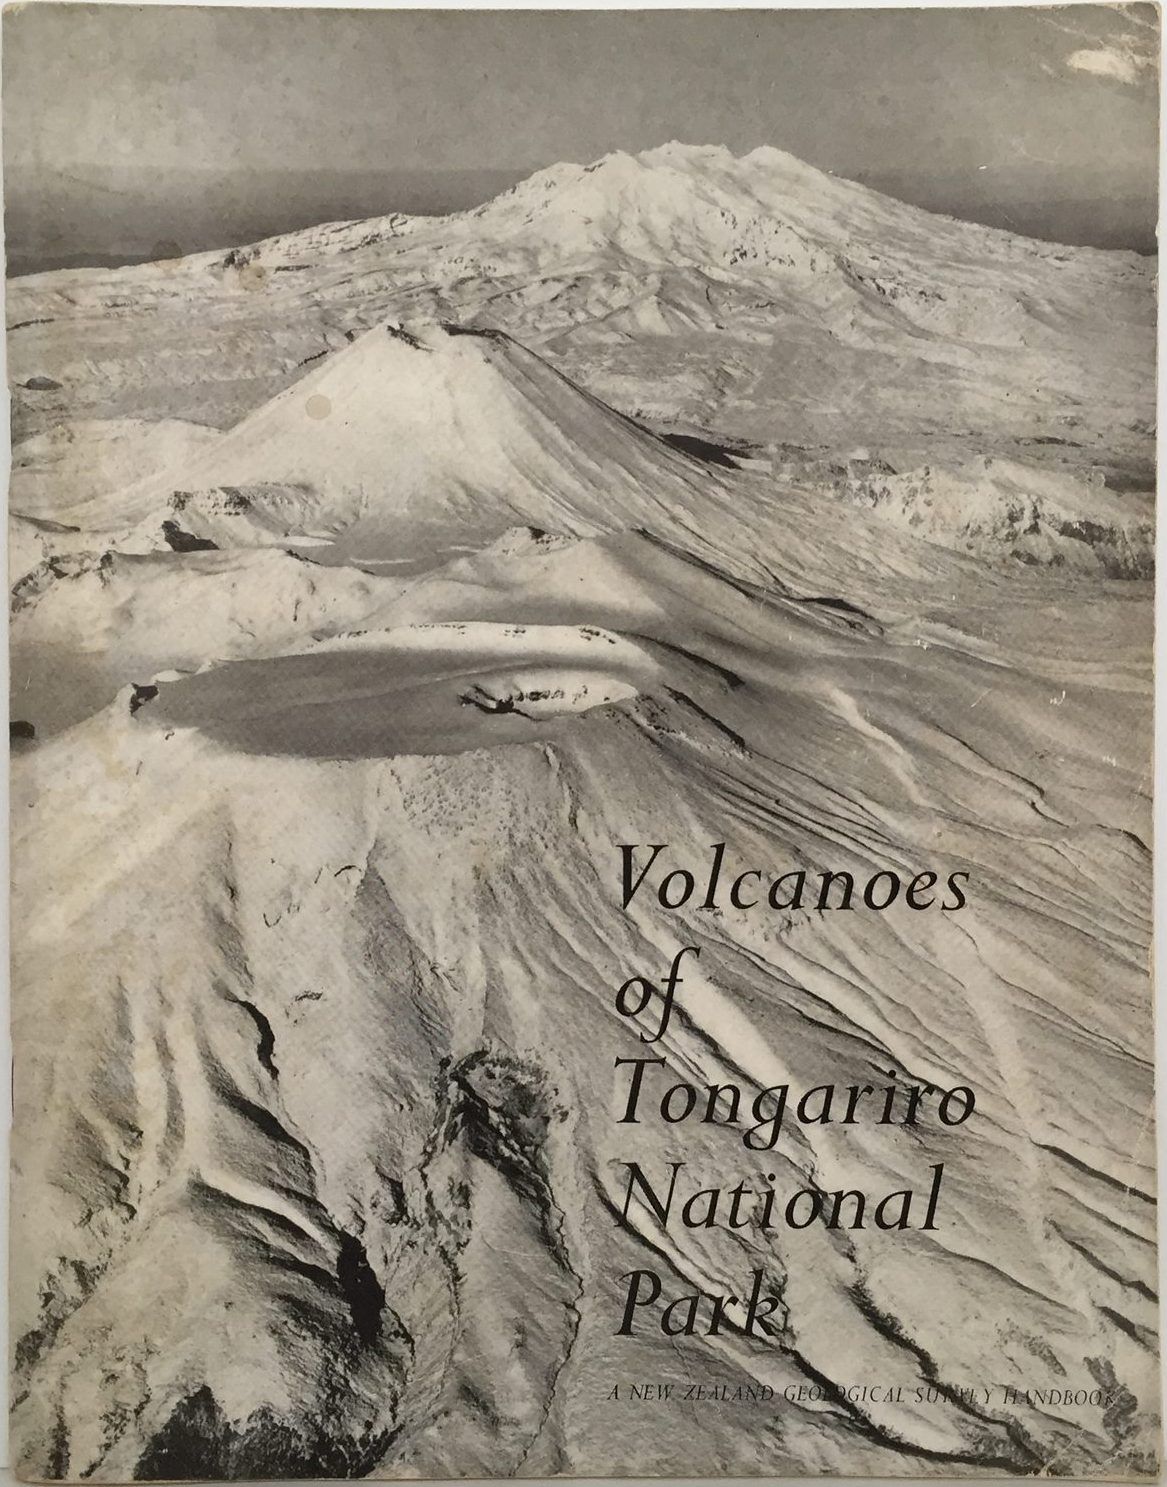 Volcanoes of Tongariro National Park